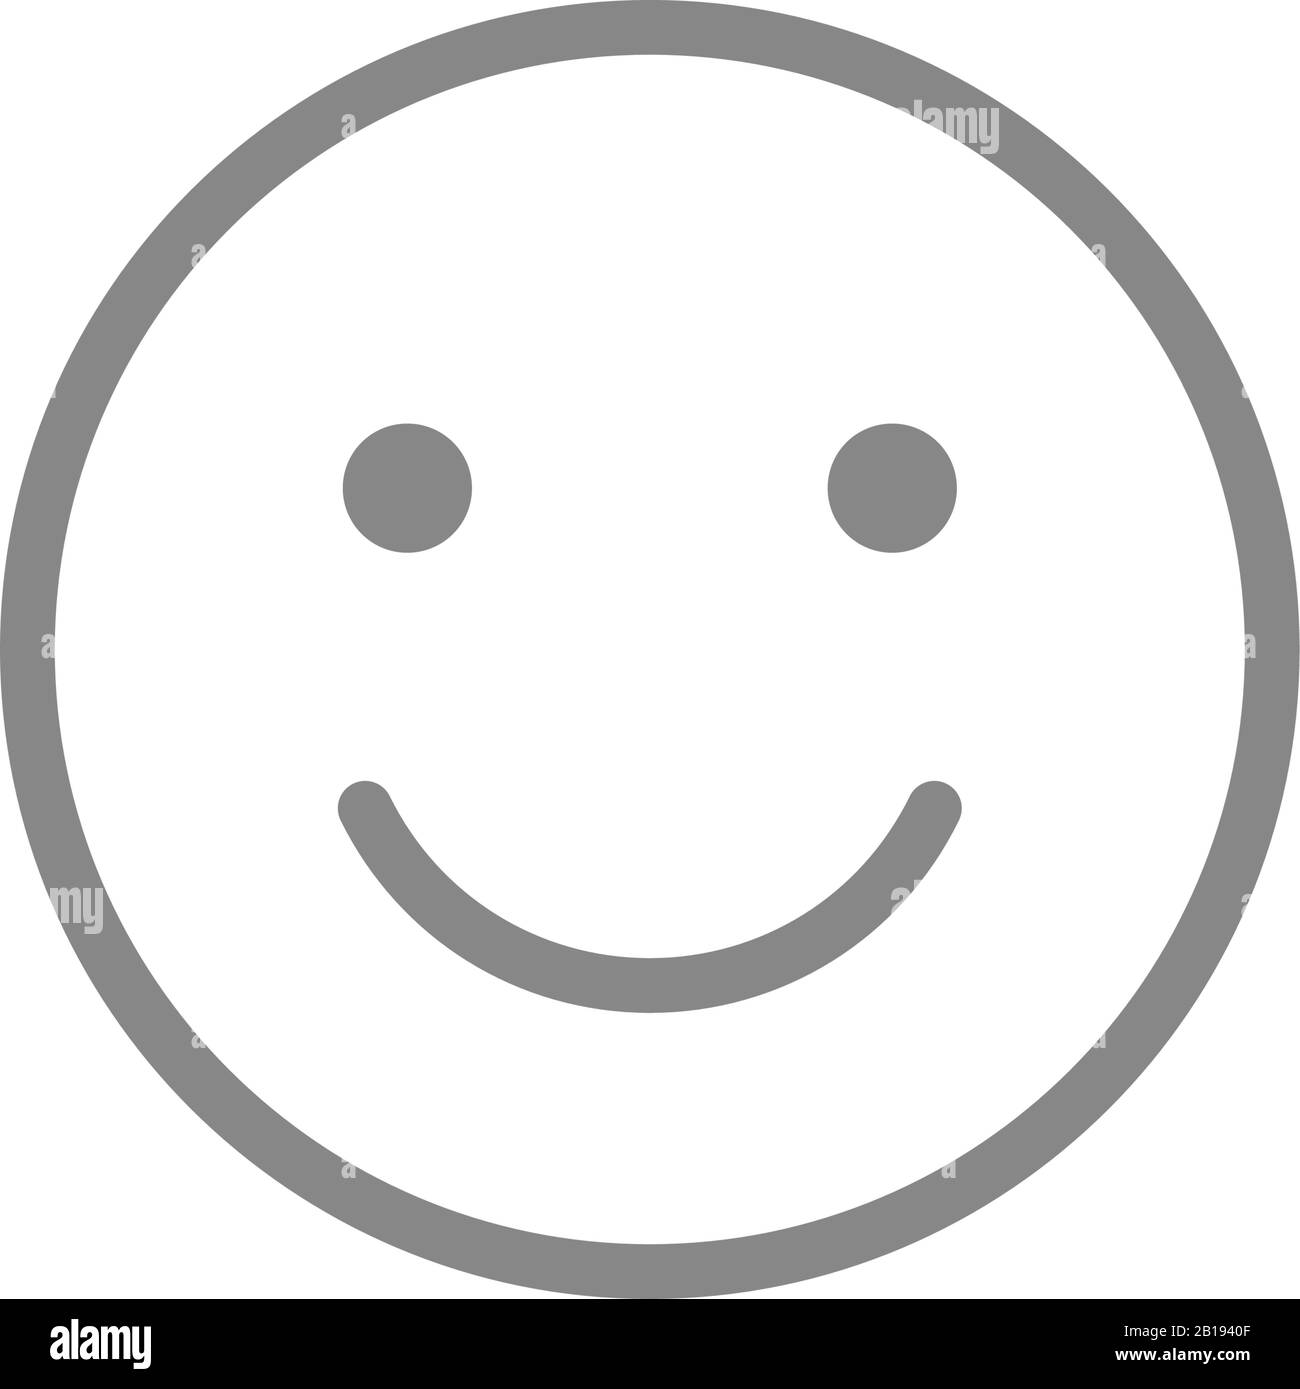 Smiley emoji line icon. Happy, success, satisfaction face symbol Stock  Vector Image & Art - Alamy